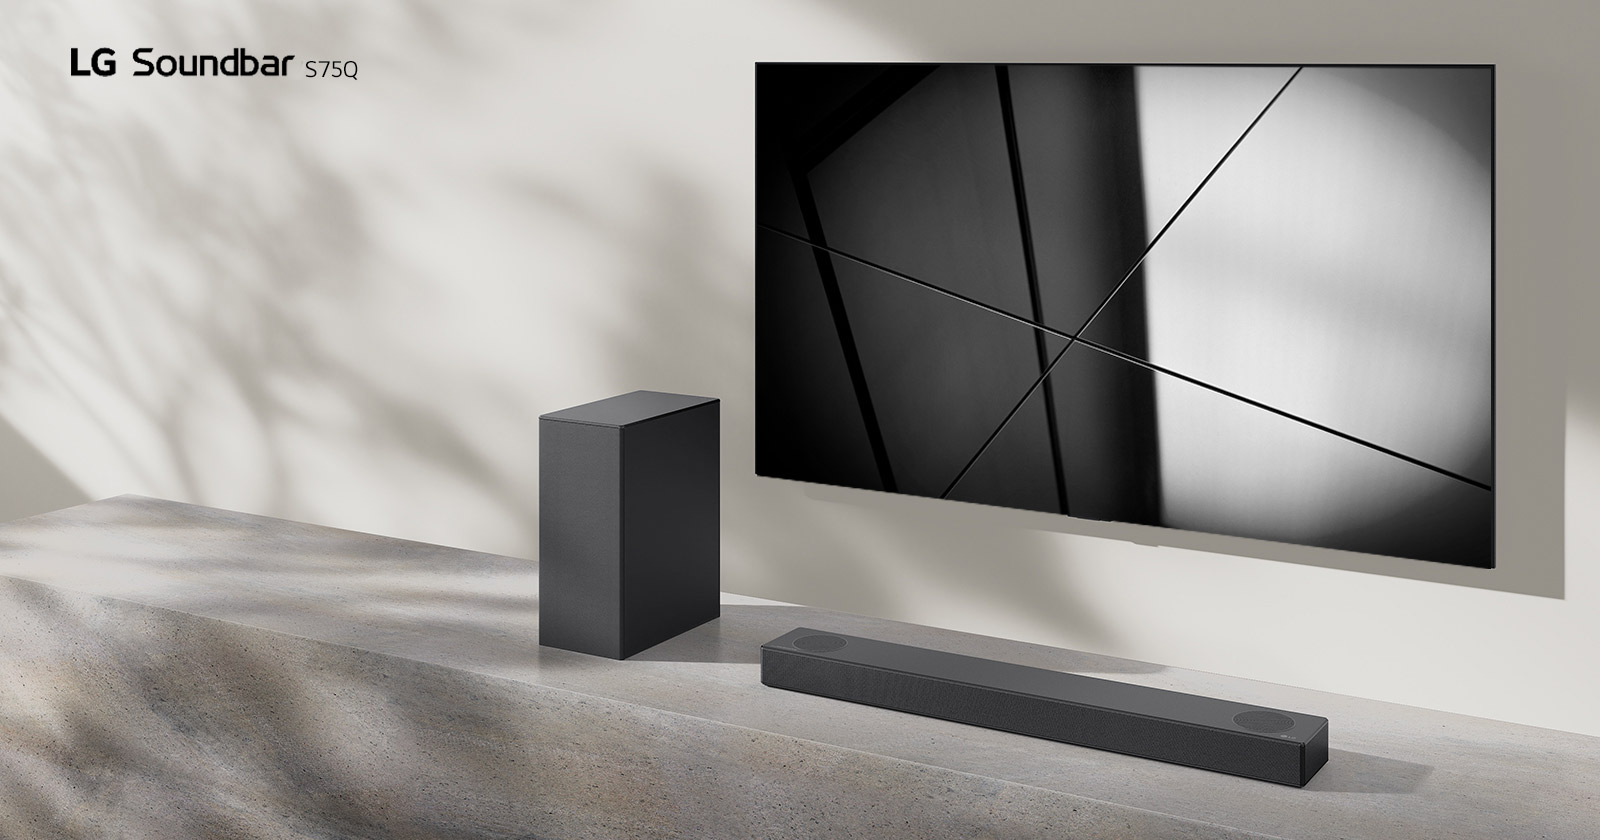 סאונד-בר S75Q מבית LG וטלוויזיית LG ניצבים יחד בסלון. הטלוויזיה פועלת, ומציגה תמונה בשחור לבן.